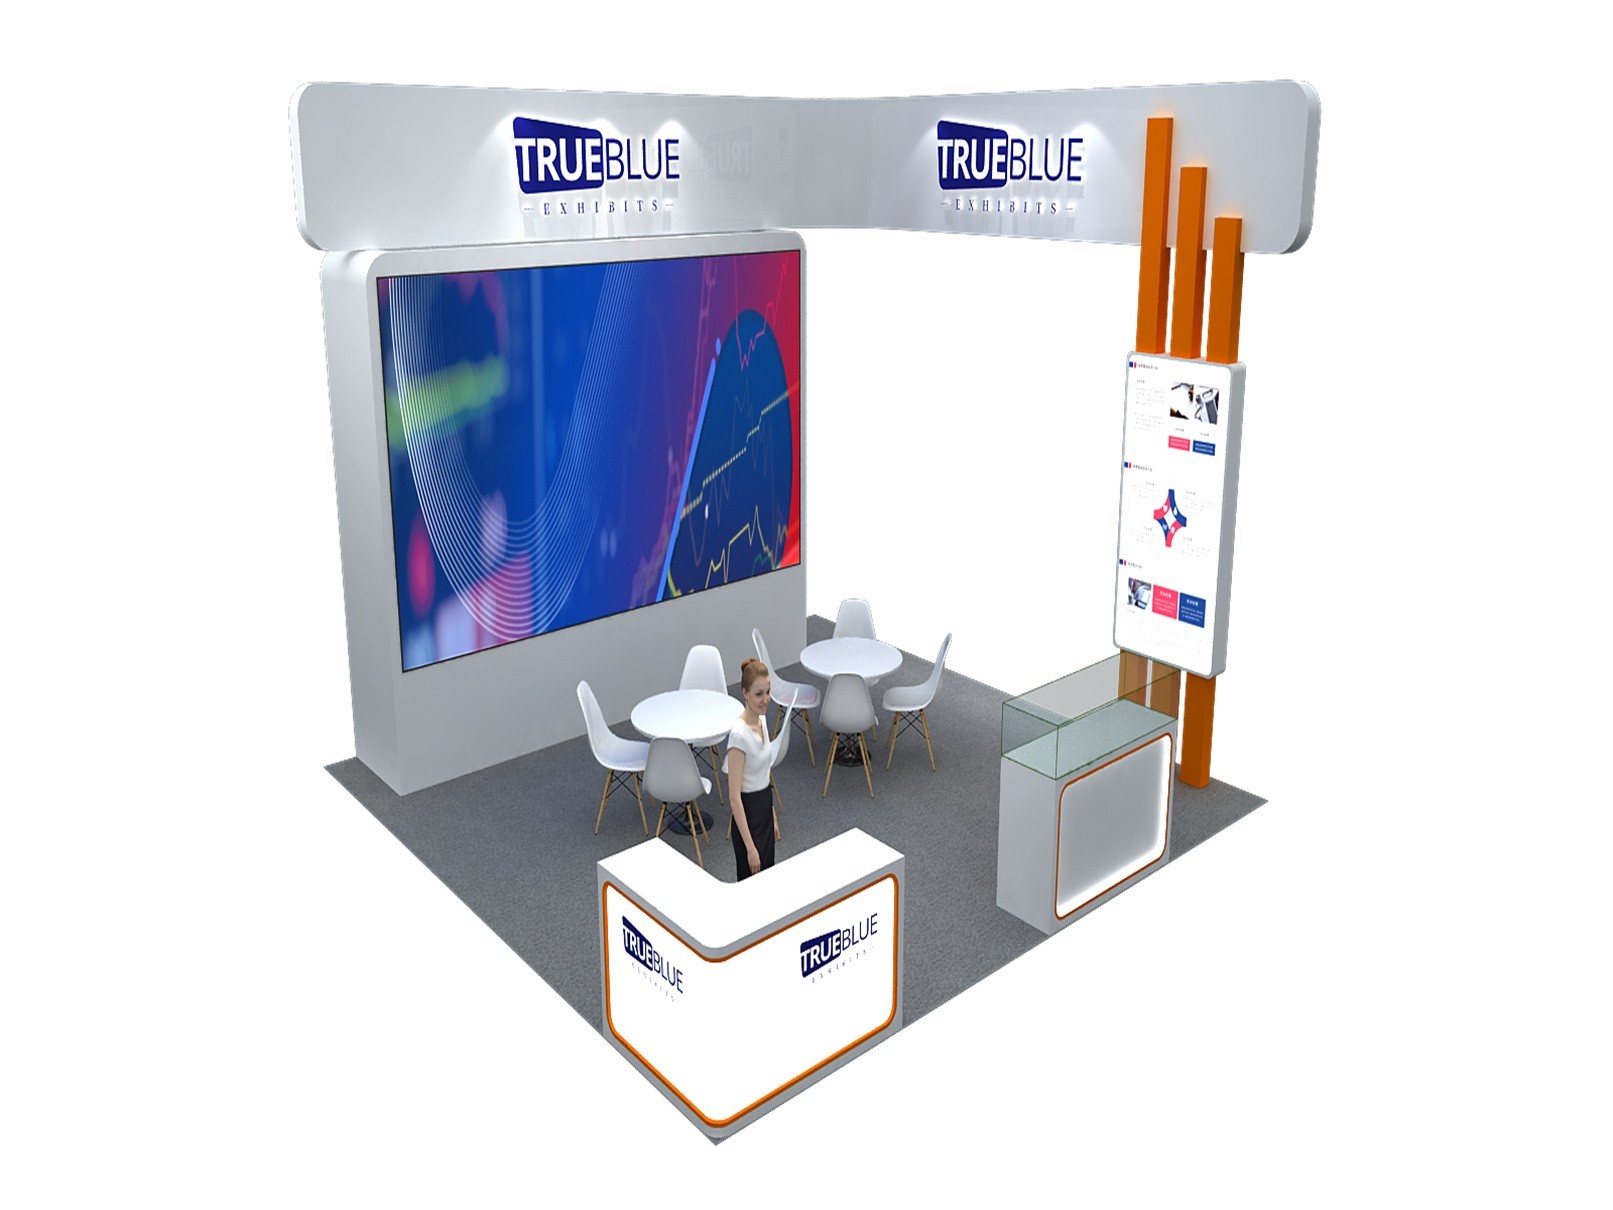 E6 20′ x 20′ Custom Trade Show Booth Design